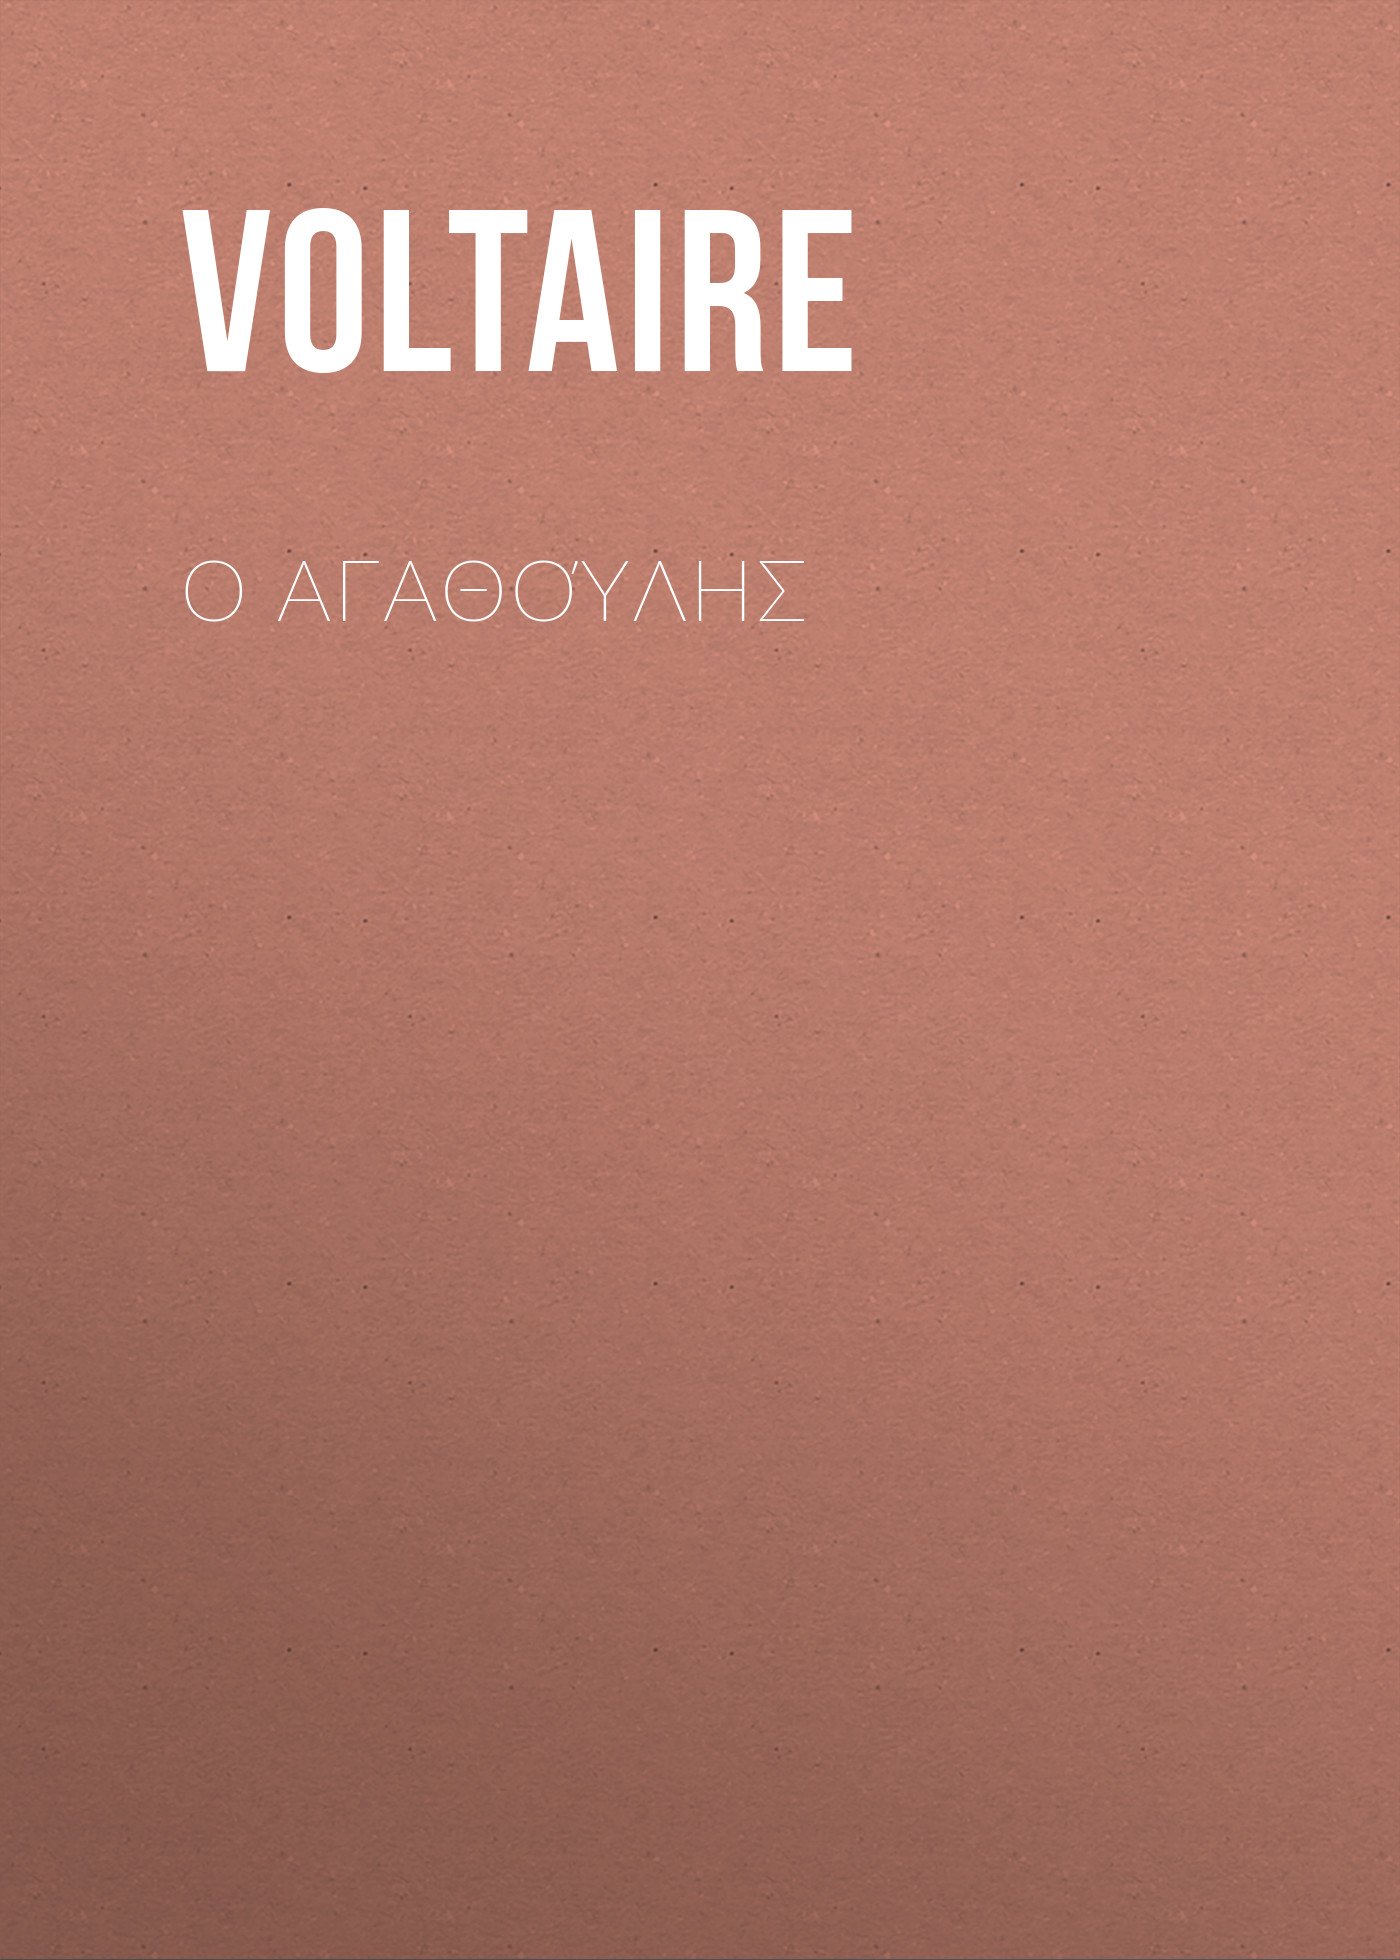 Книга Ο Αγαθούλης из серии , созданная  Voltaire, может относится к жанру Литература 18 века, Зарубежная классика. Стоимость электронной книги Ο Αγαθούλης с идентификатором 25561556 составляет 0 руб.